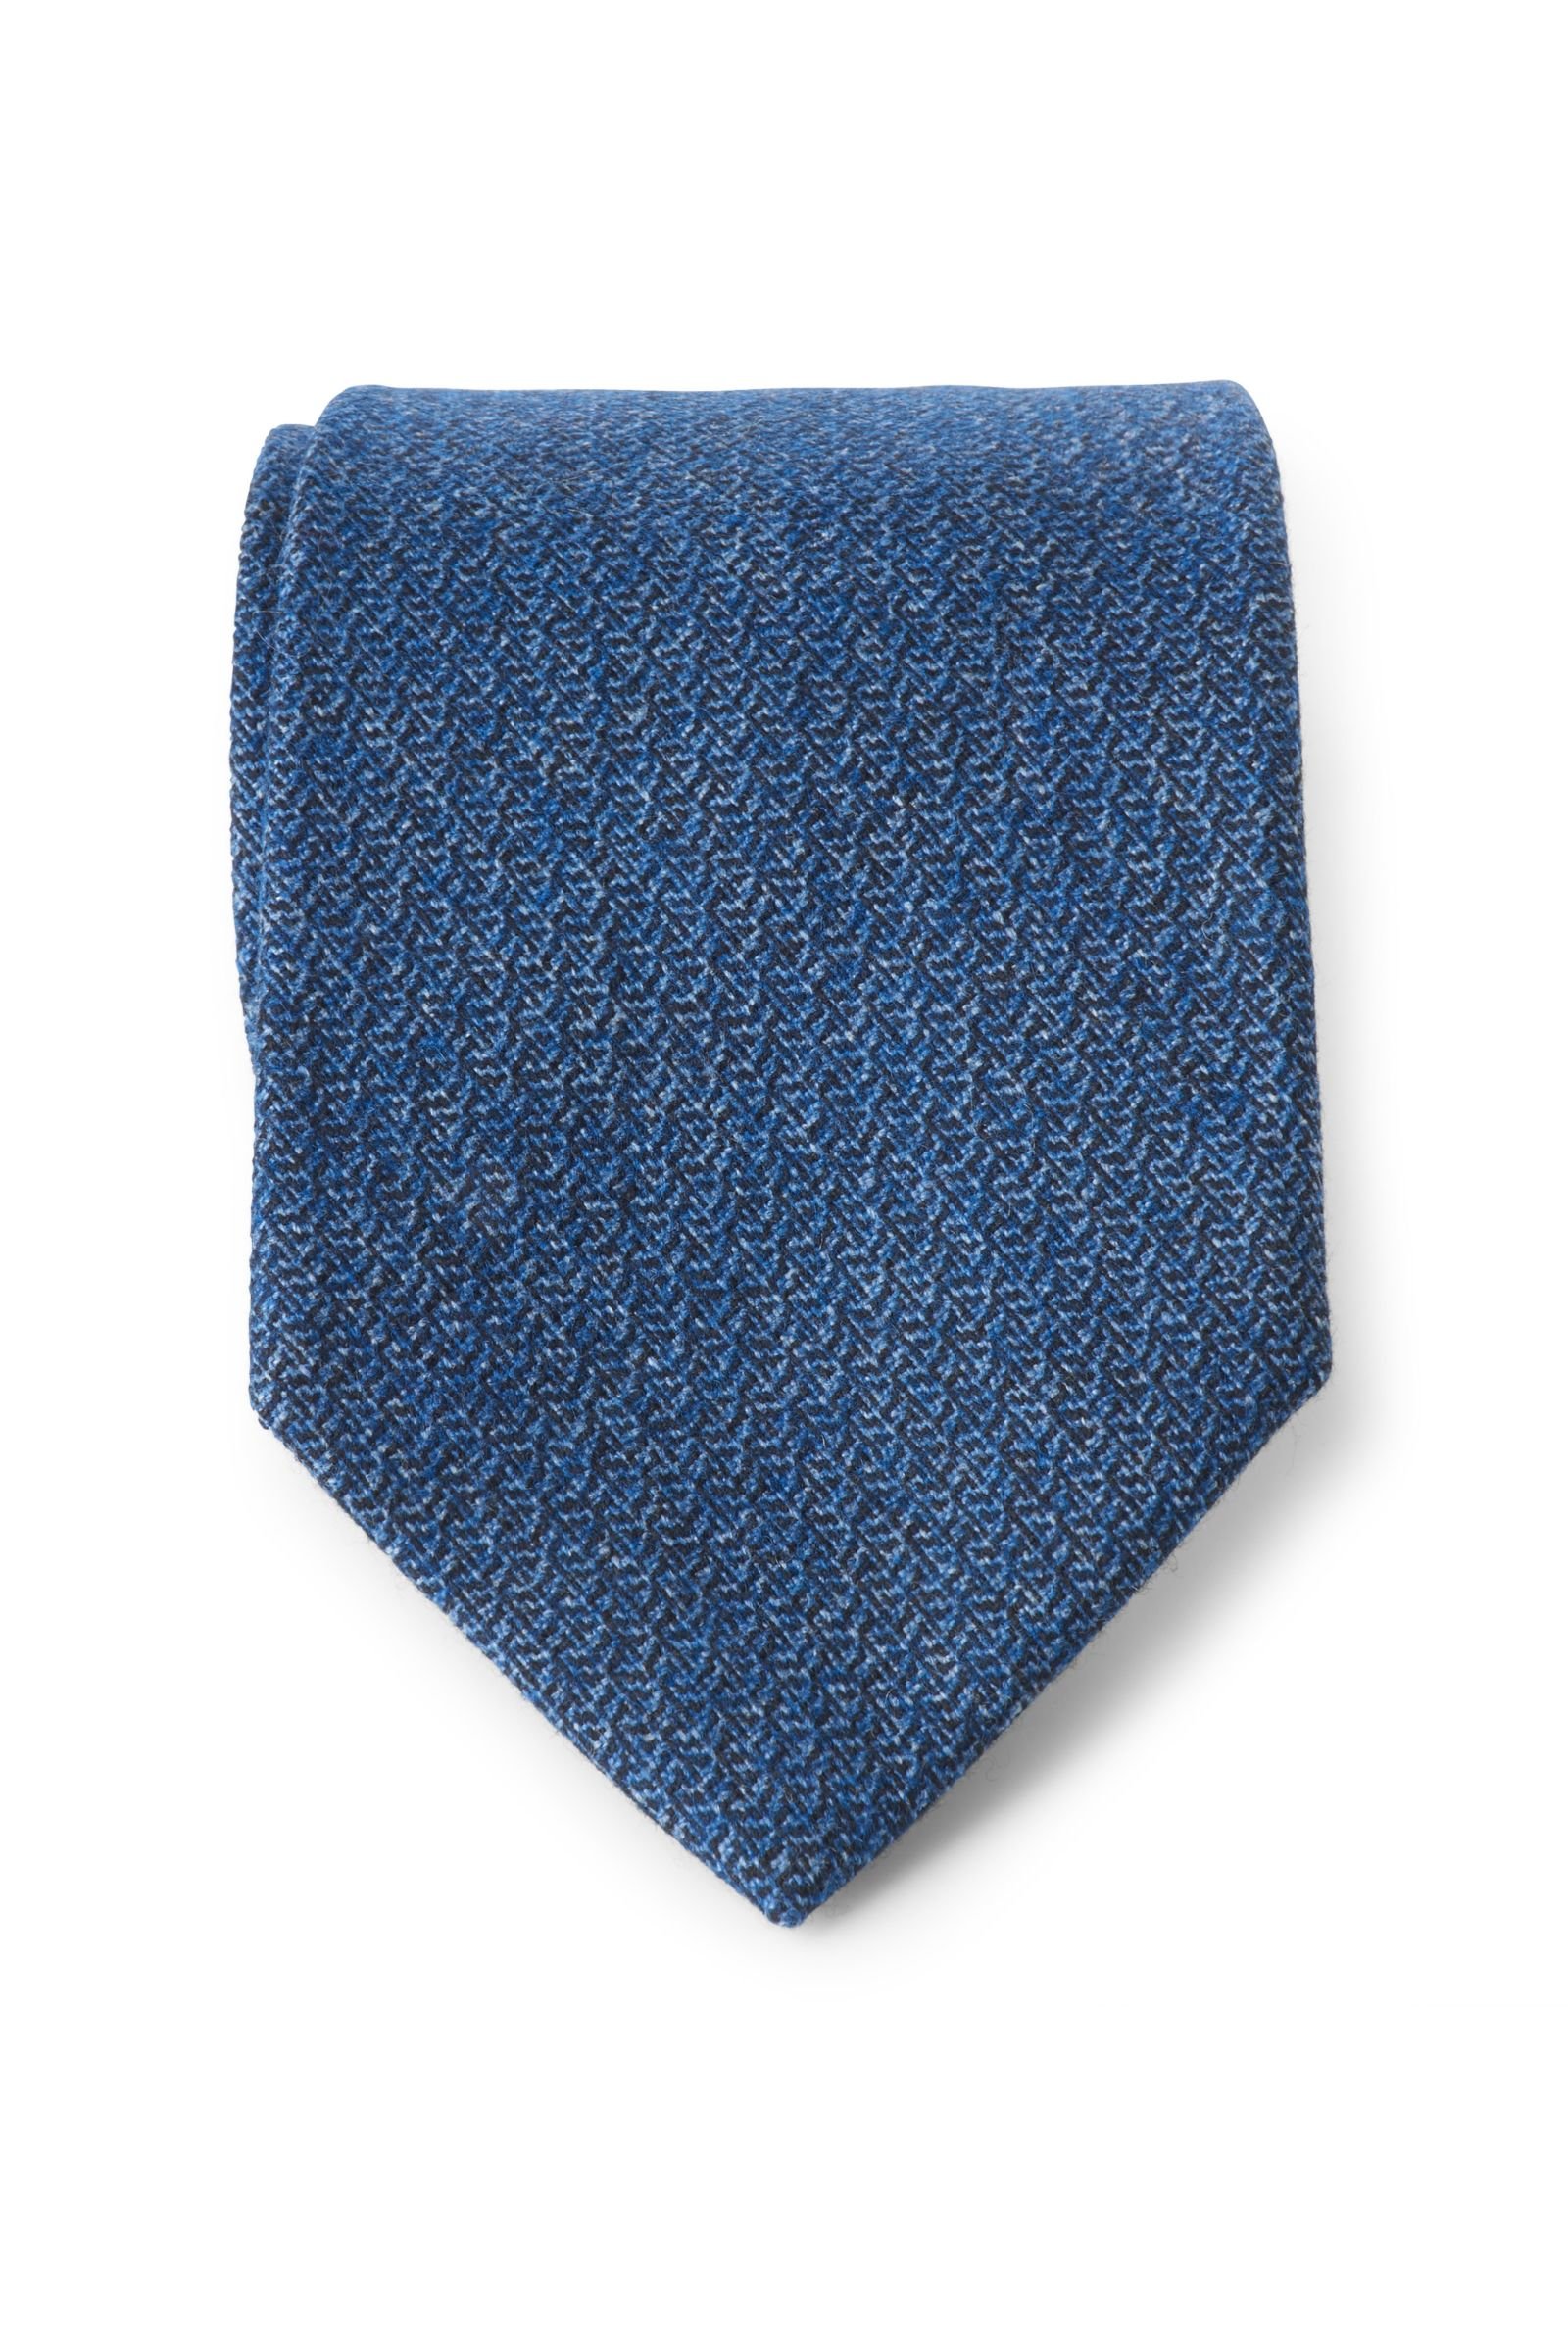 Tie smoky blue patterned